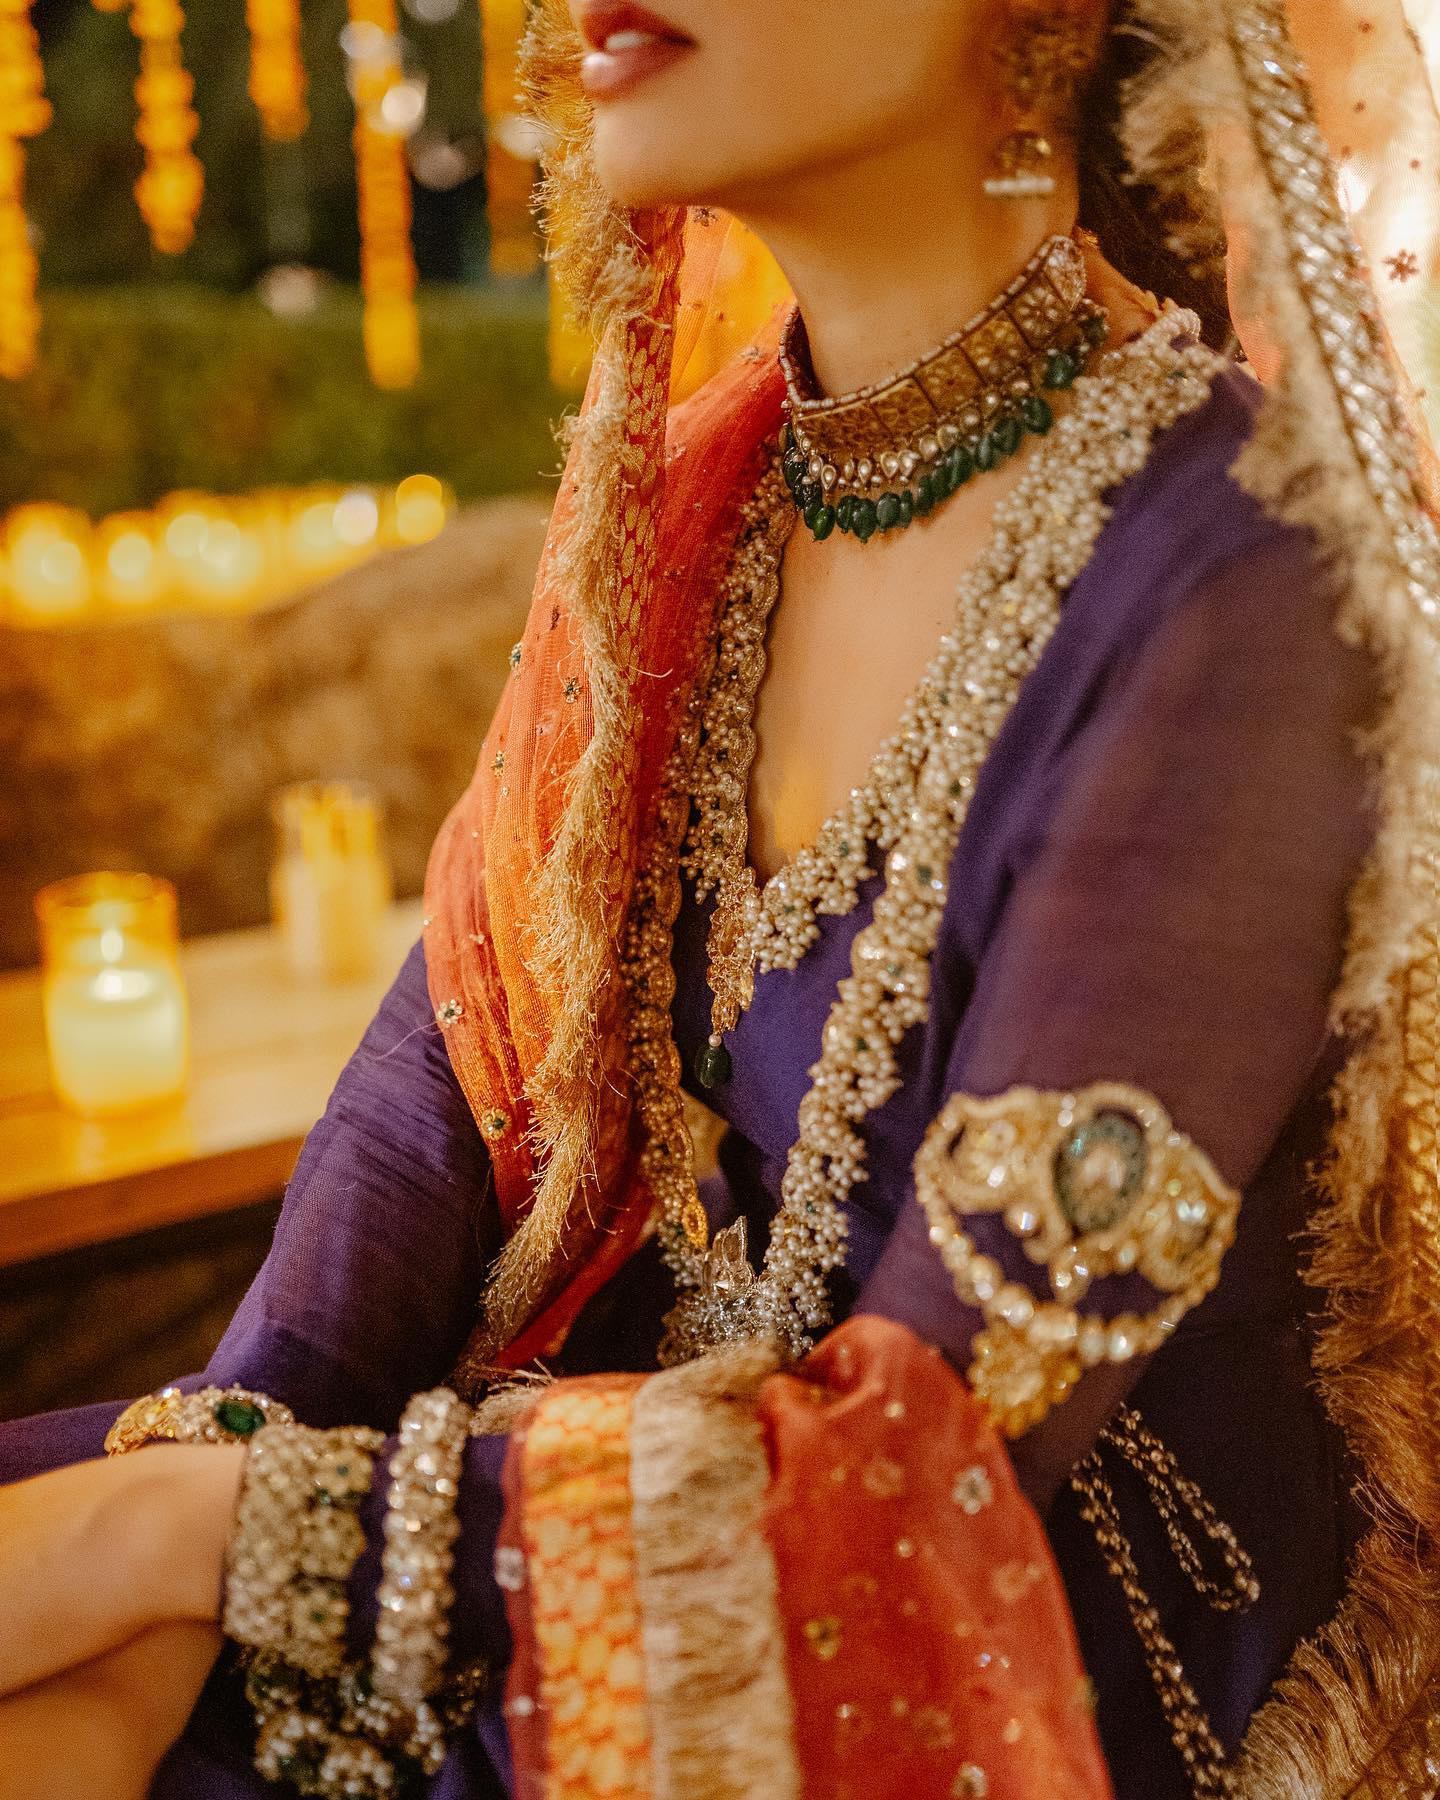 Mahira Khan's Pre-Wedding Looks